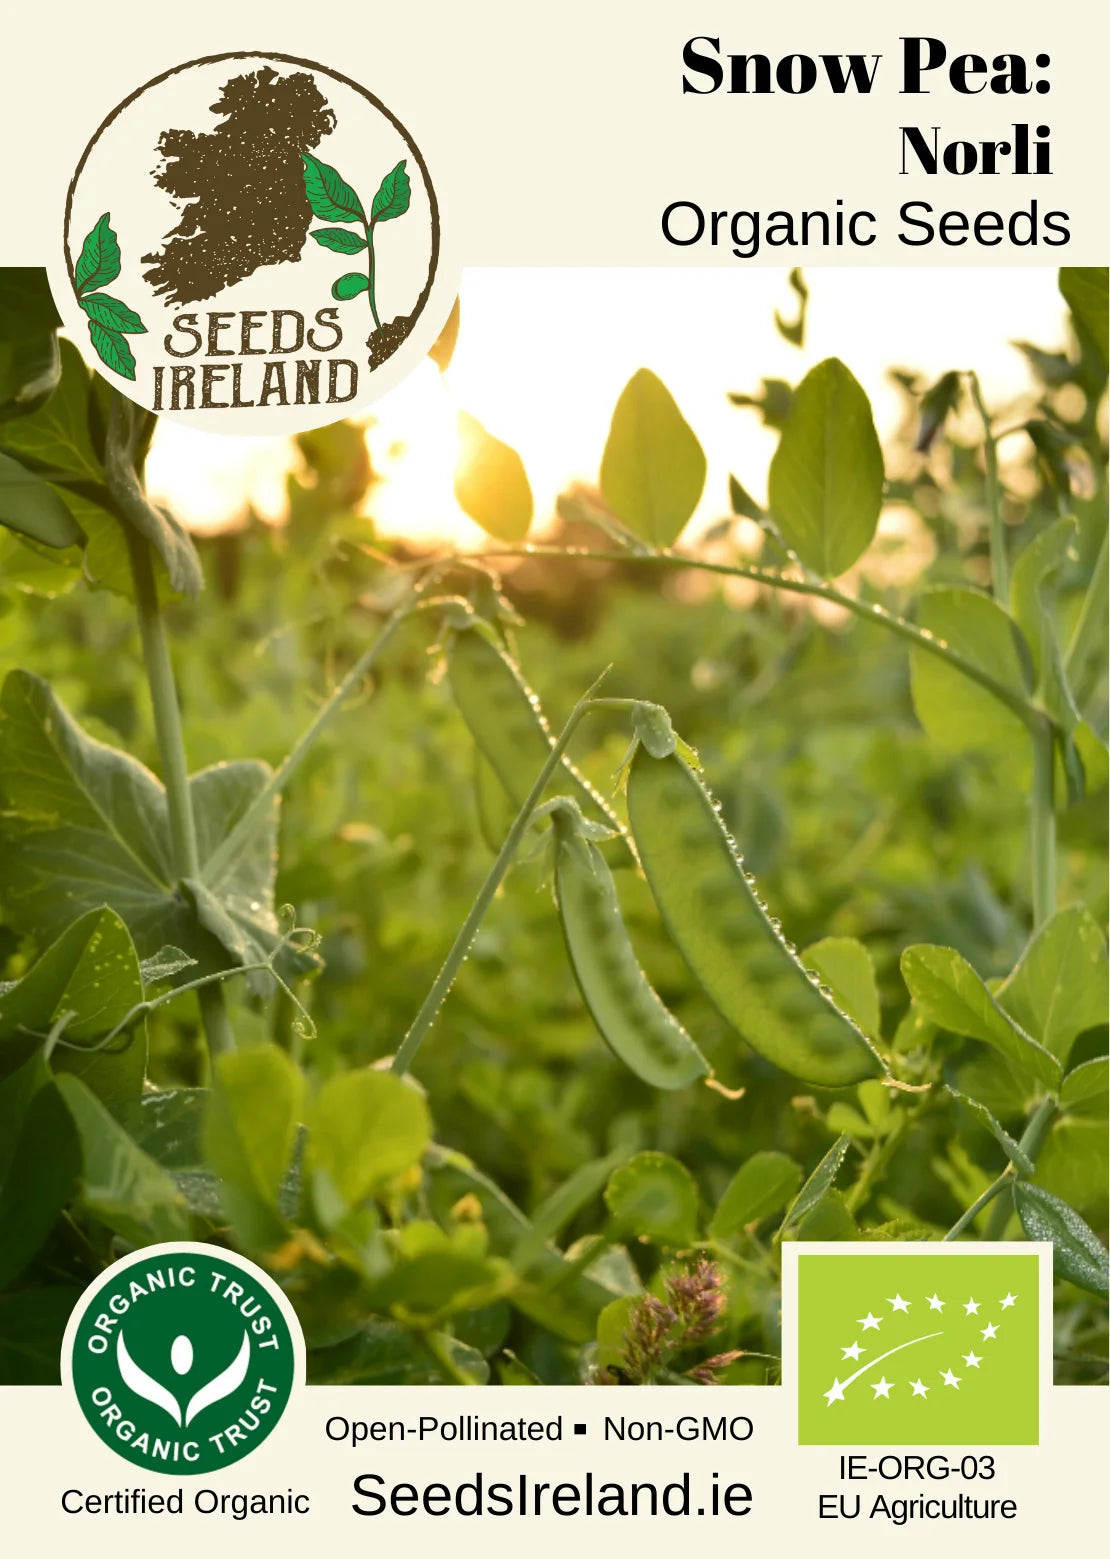 Snow Pea: Norli Organic Seed